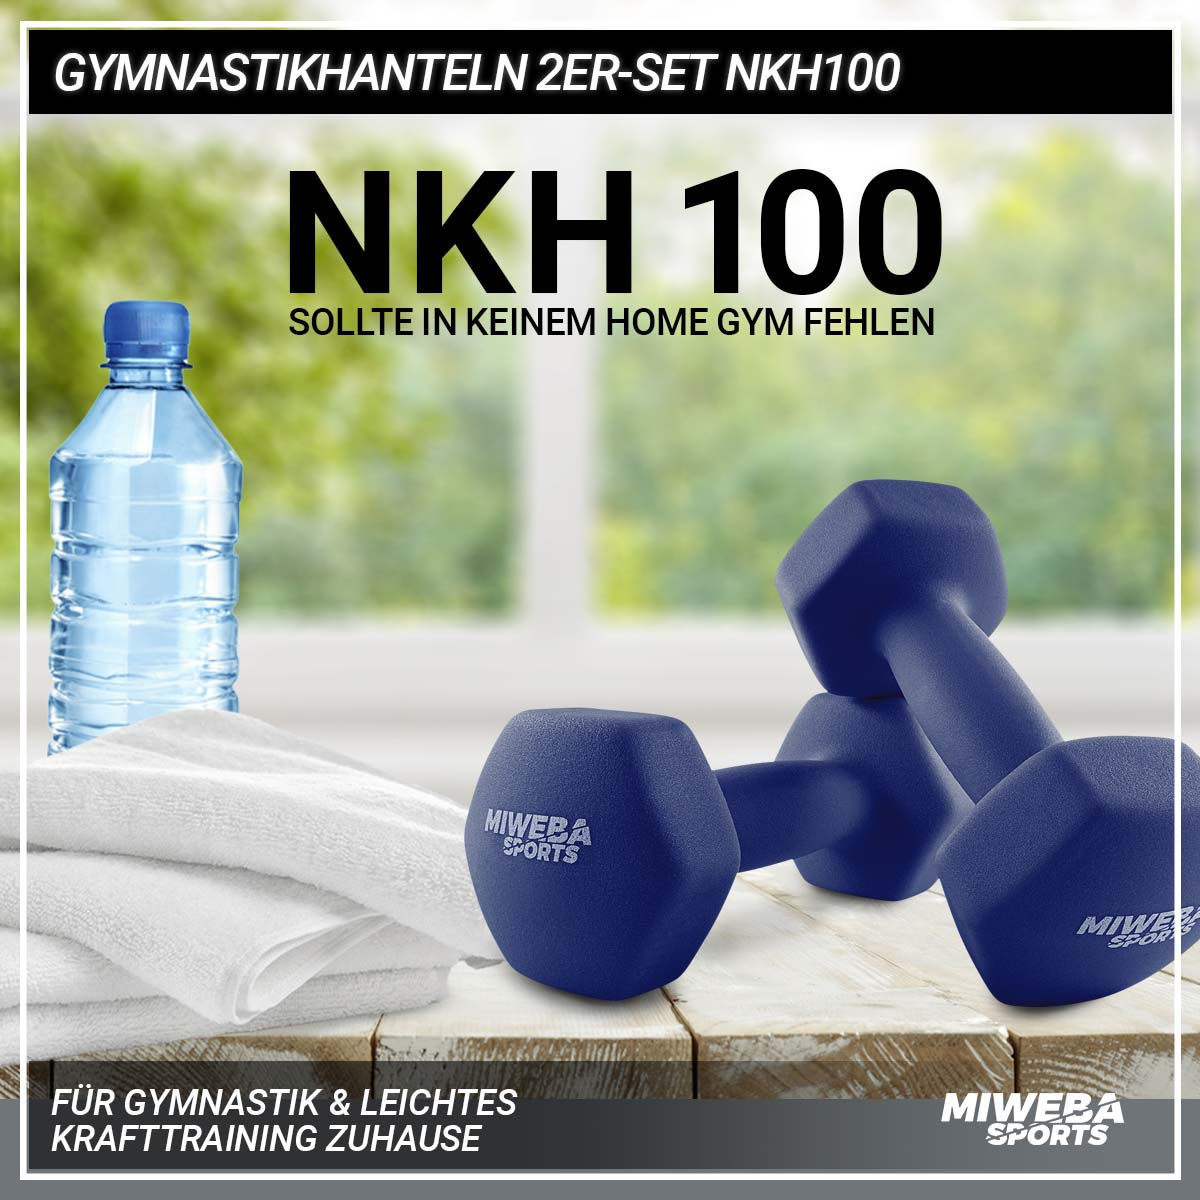 MIWEBA SPORTS 2er Kurzhantel, NKH100 Gymnastikhanteln Set Königsblau